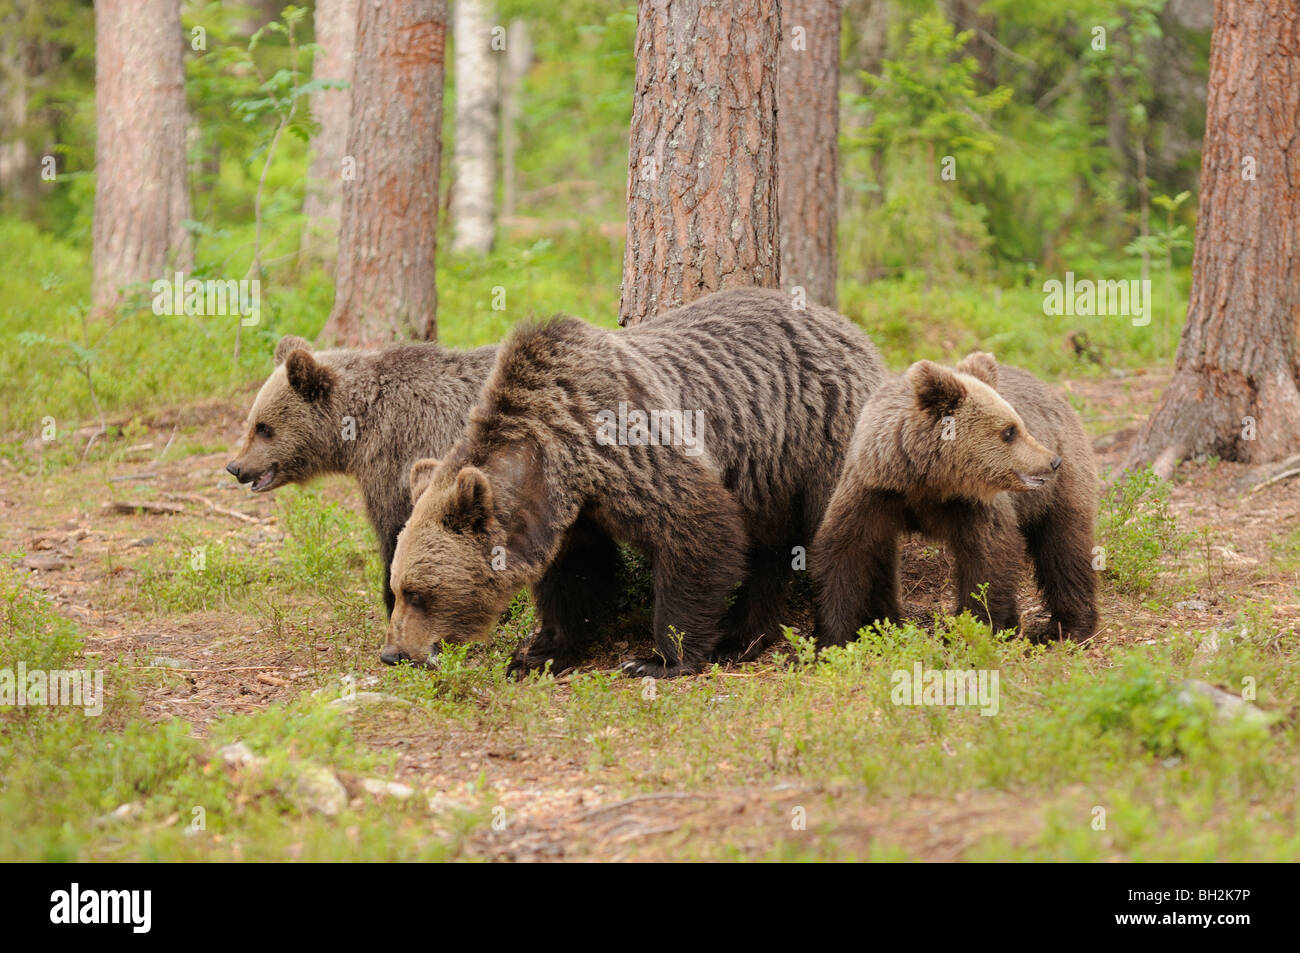 Oso Pardo europeo Ursos arctos Madre y cachorros fotografiado en Finlandia Foto de stock